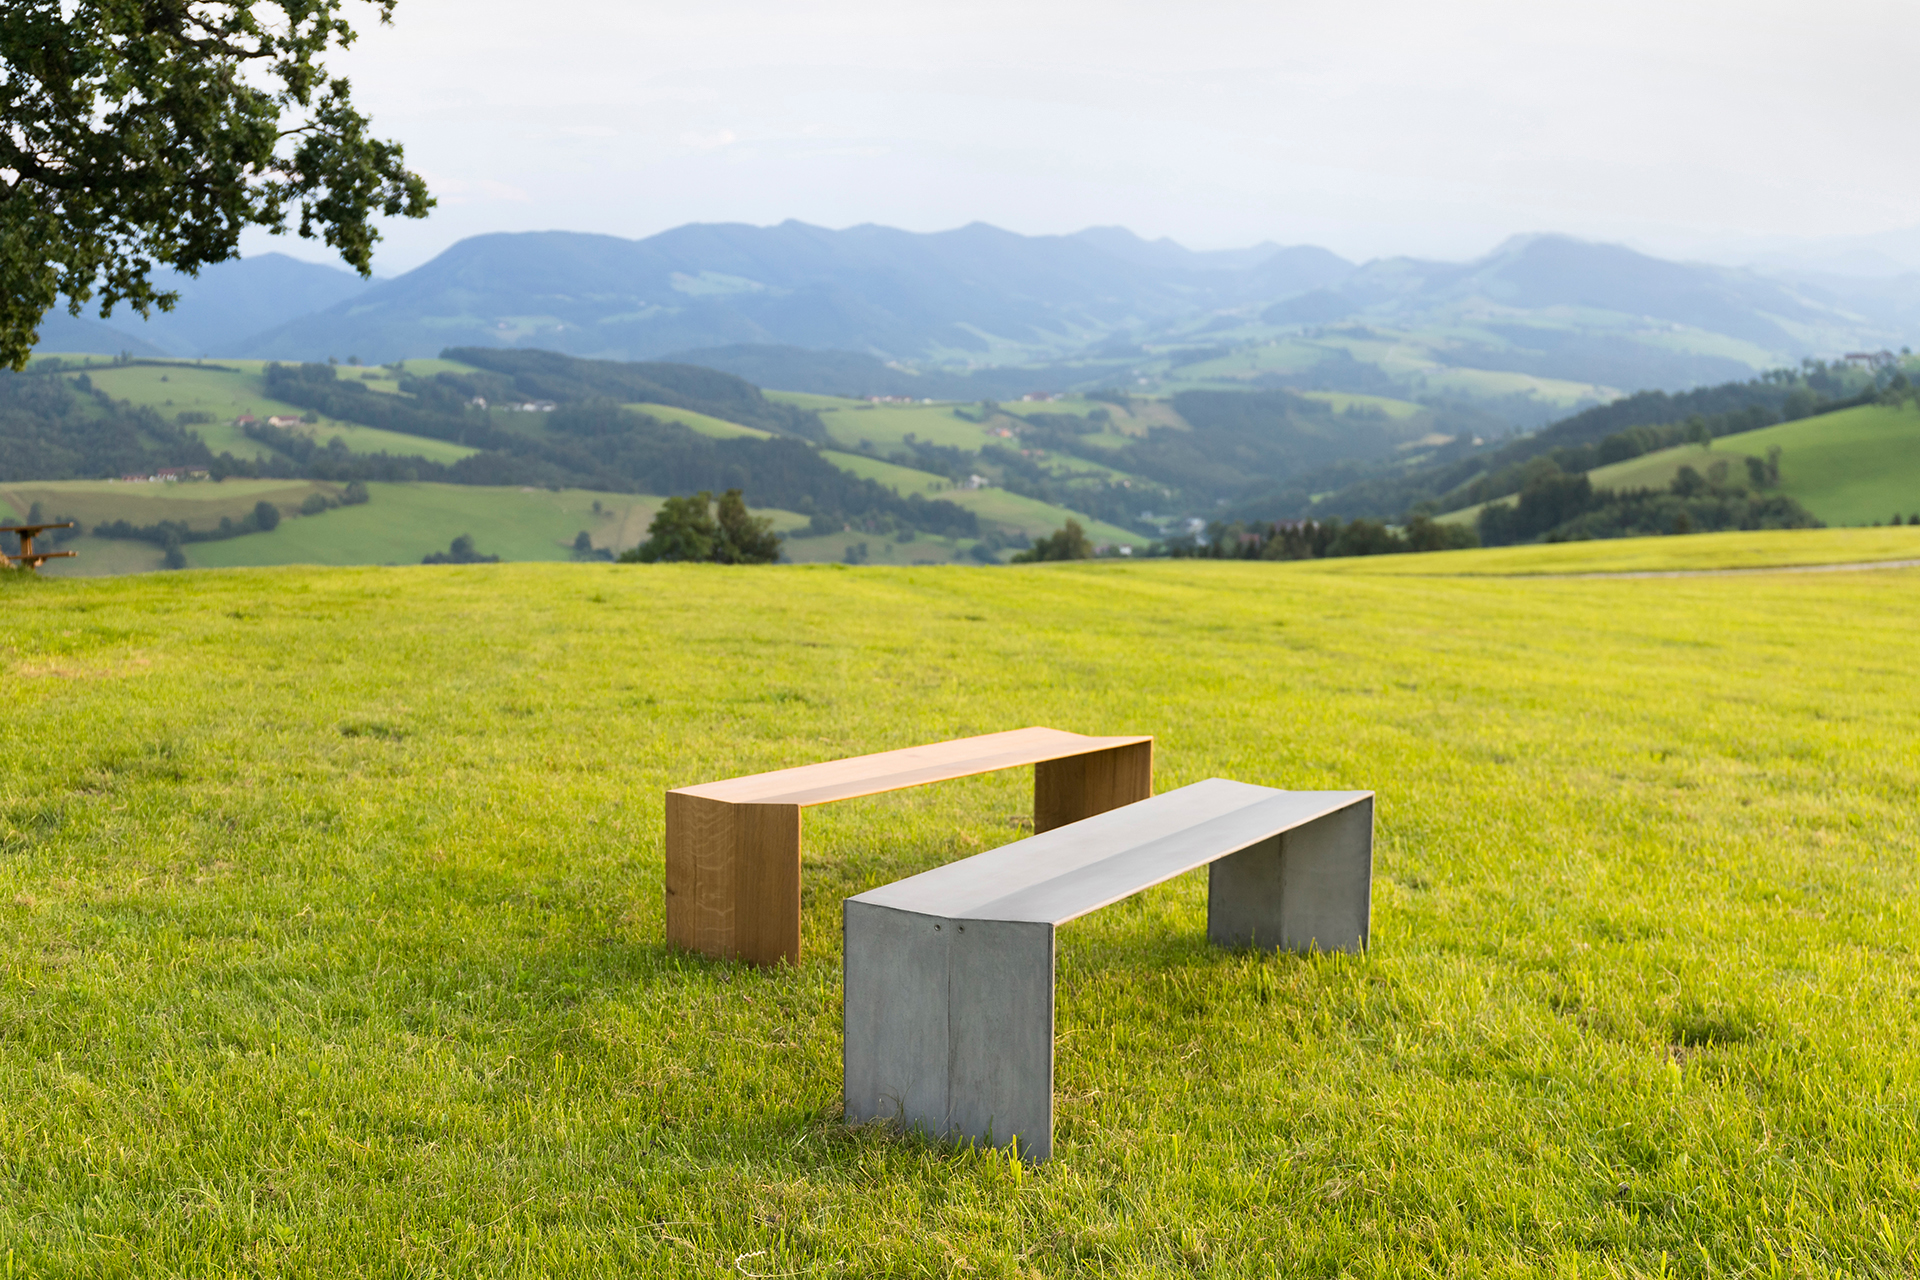 E737 ultraschlanke Sitzbank aus Beton und Holz by designkollektiv mit DI Kromoser, Interiordesign, Produktdesign, Möbeldesign